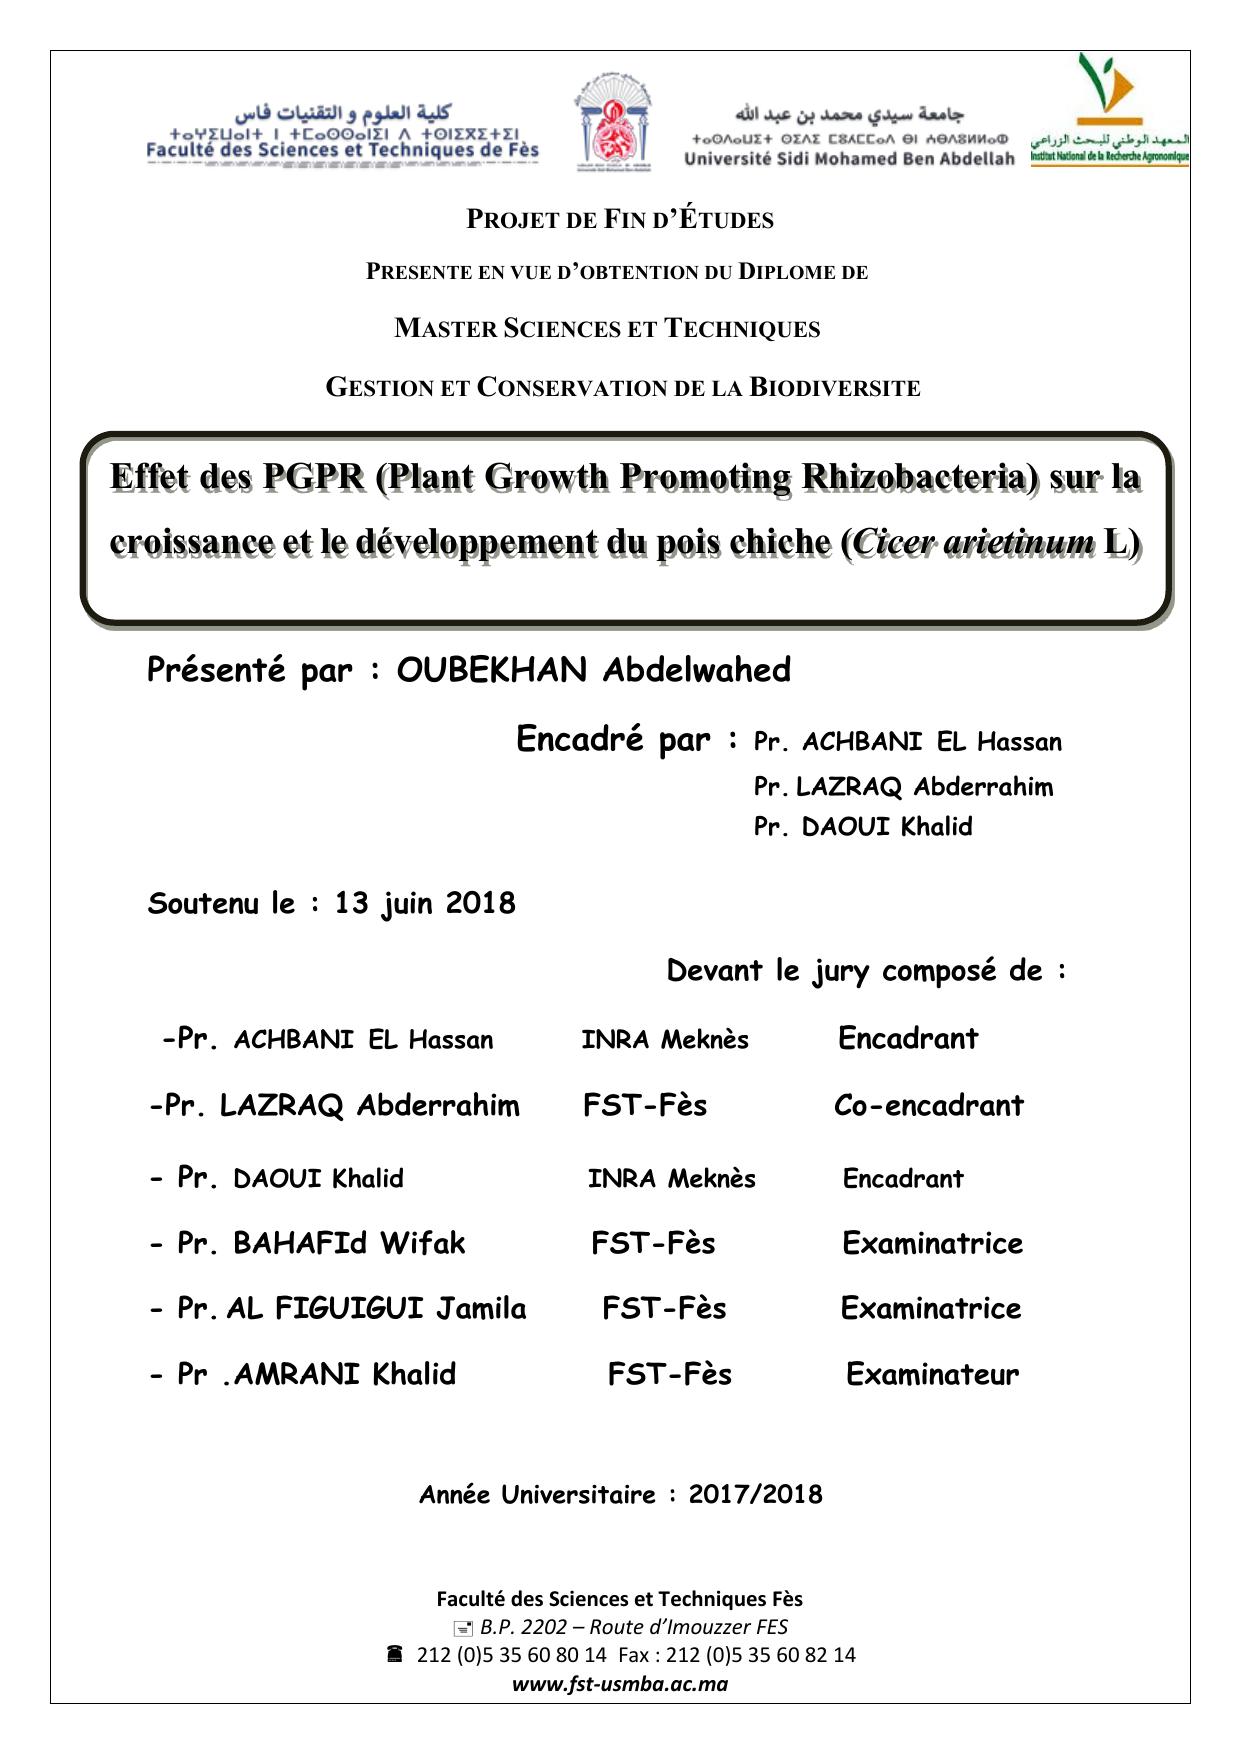 Effet des PGPR (Plant Growth Promoting Rhizobacteria) sur la croissance et le développement du pois chiche (Cicer arietinum L)